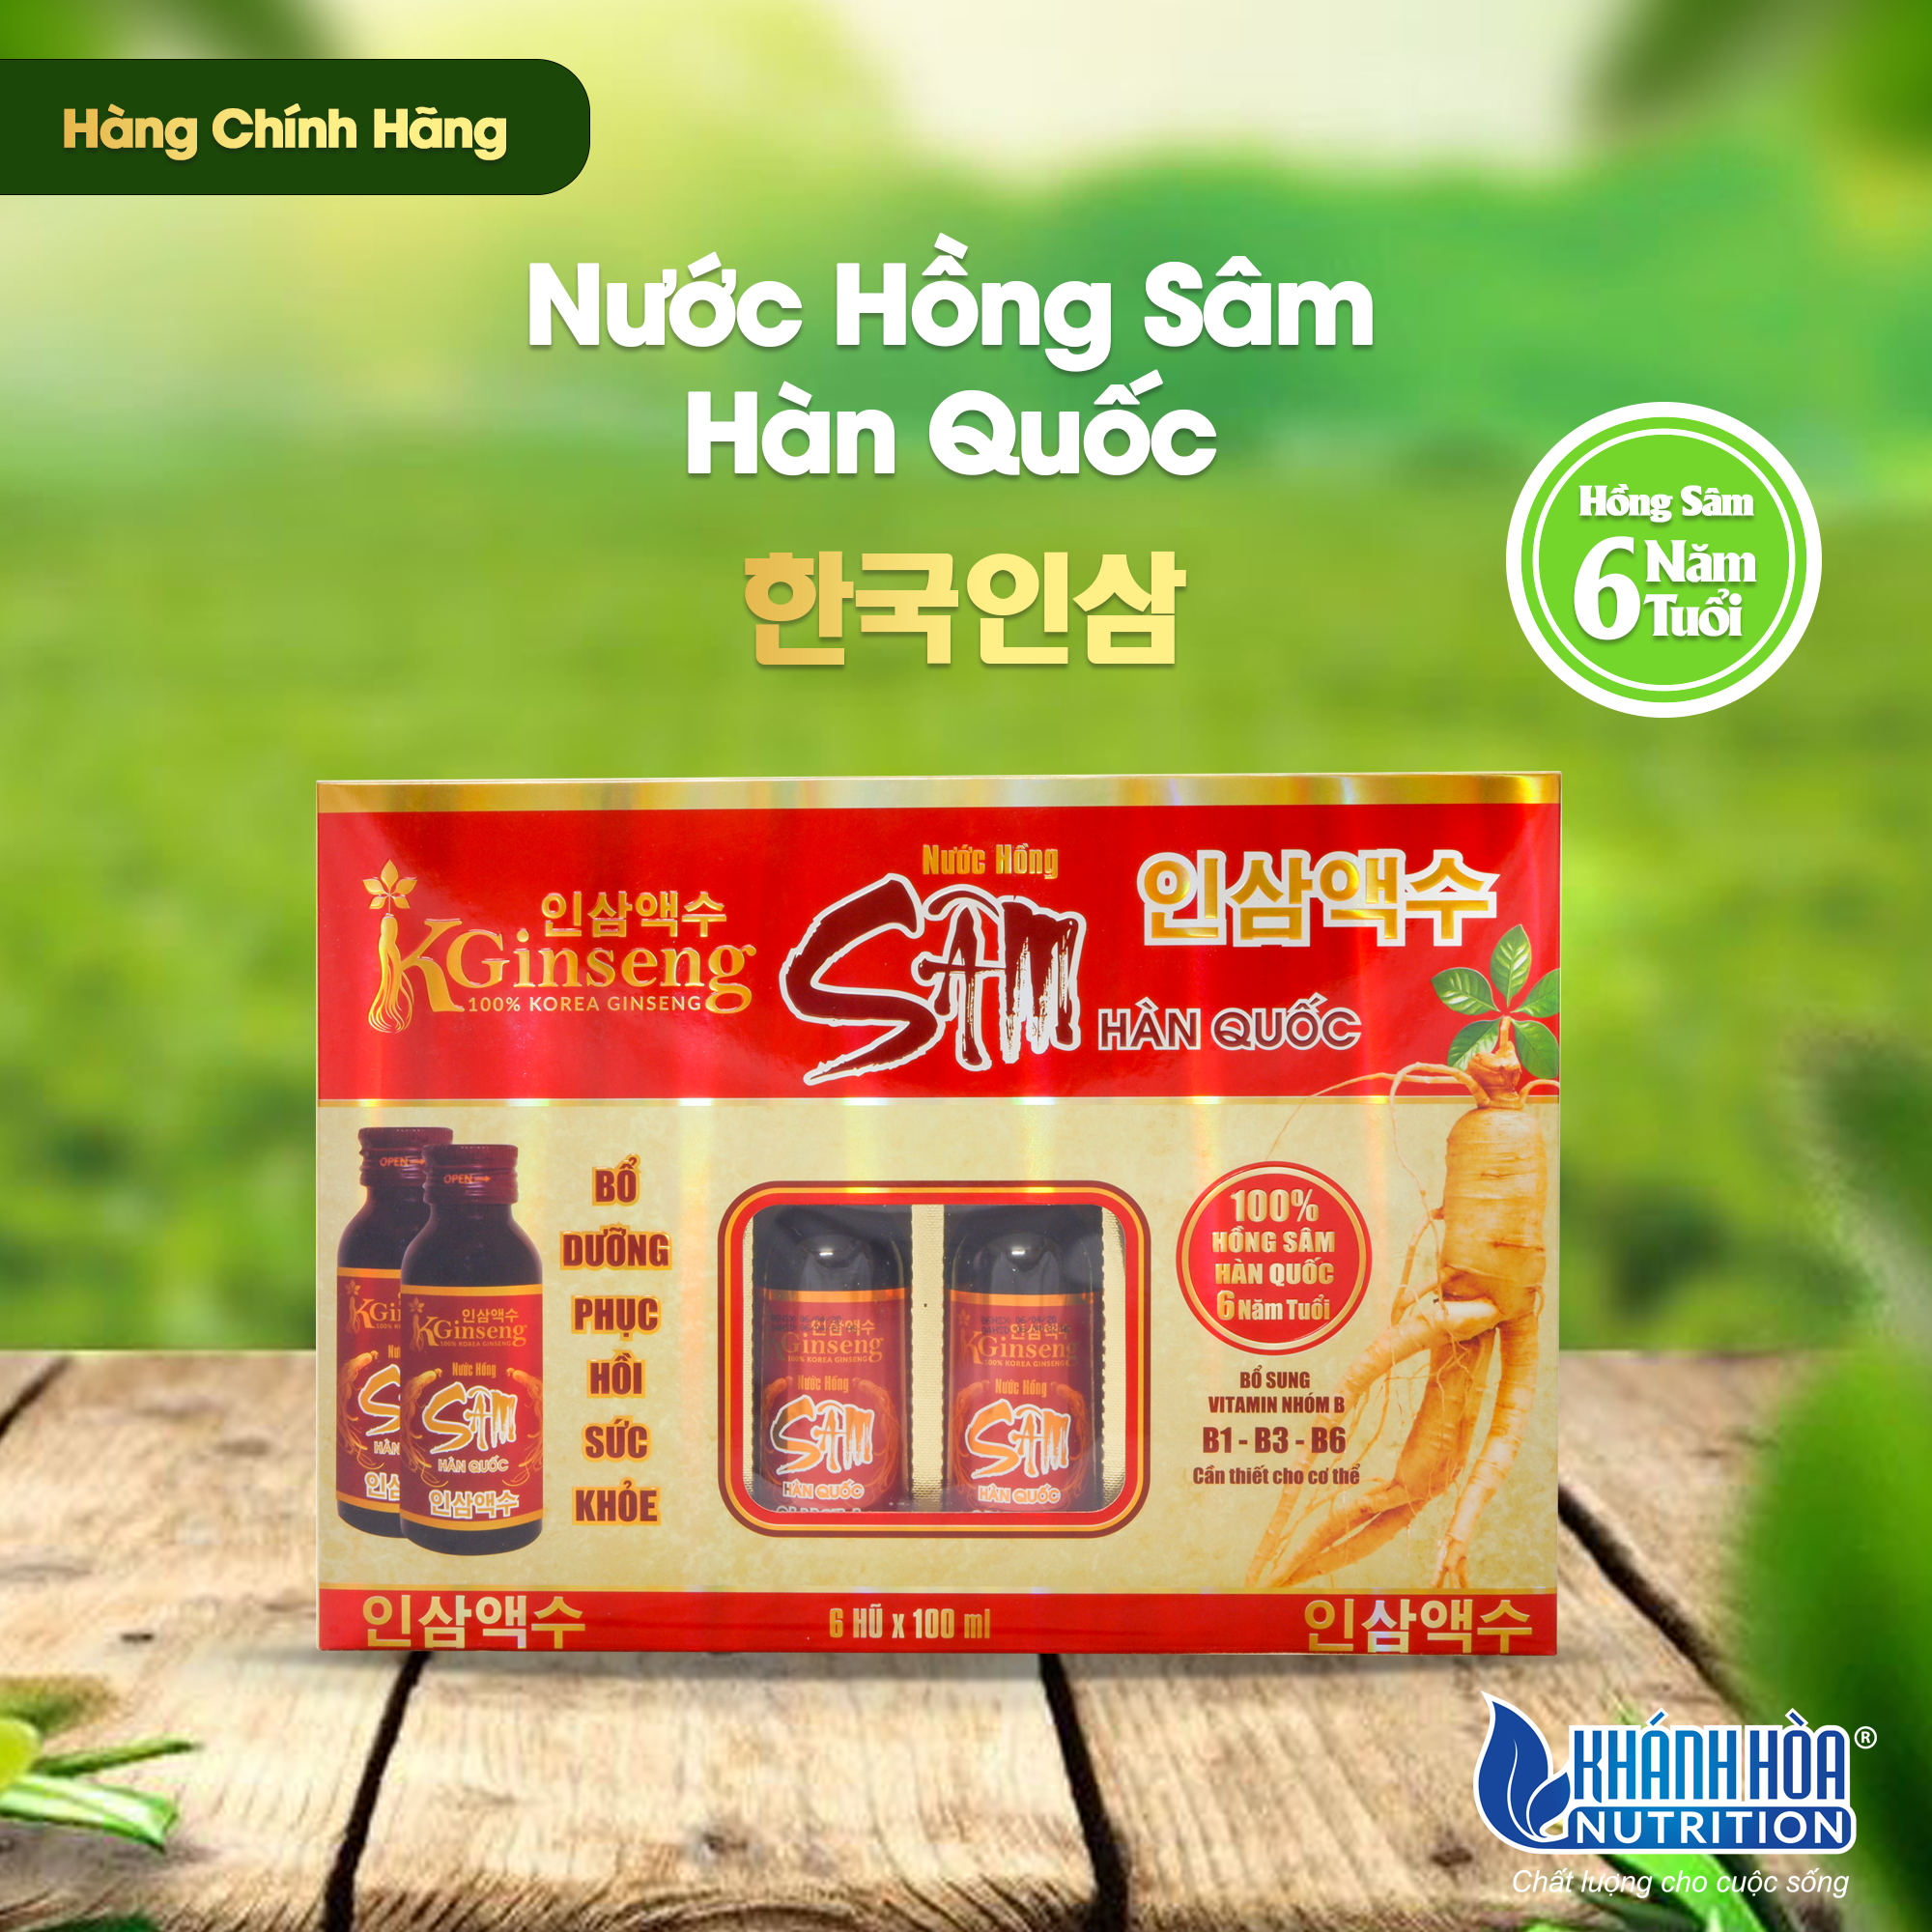 Nước Hồng Sâm Hàn Quốc KGinseng 100% Khánh Hòa Nutrition - Thực Phẩm Bổ Sung Dinh Dưỡng (Hộp 6 lọ x 100ml)